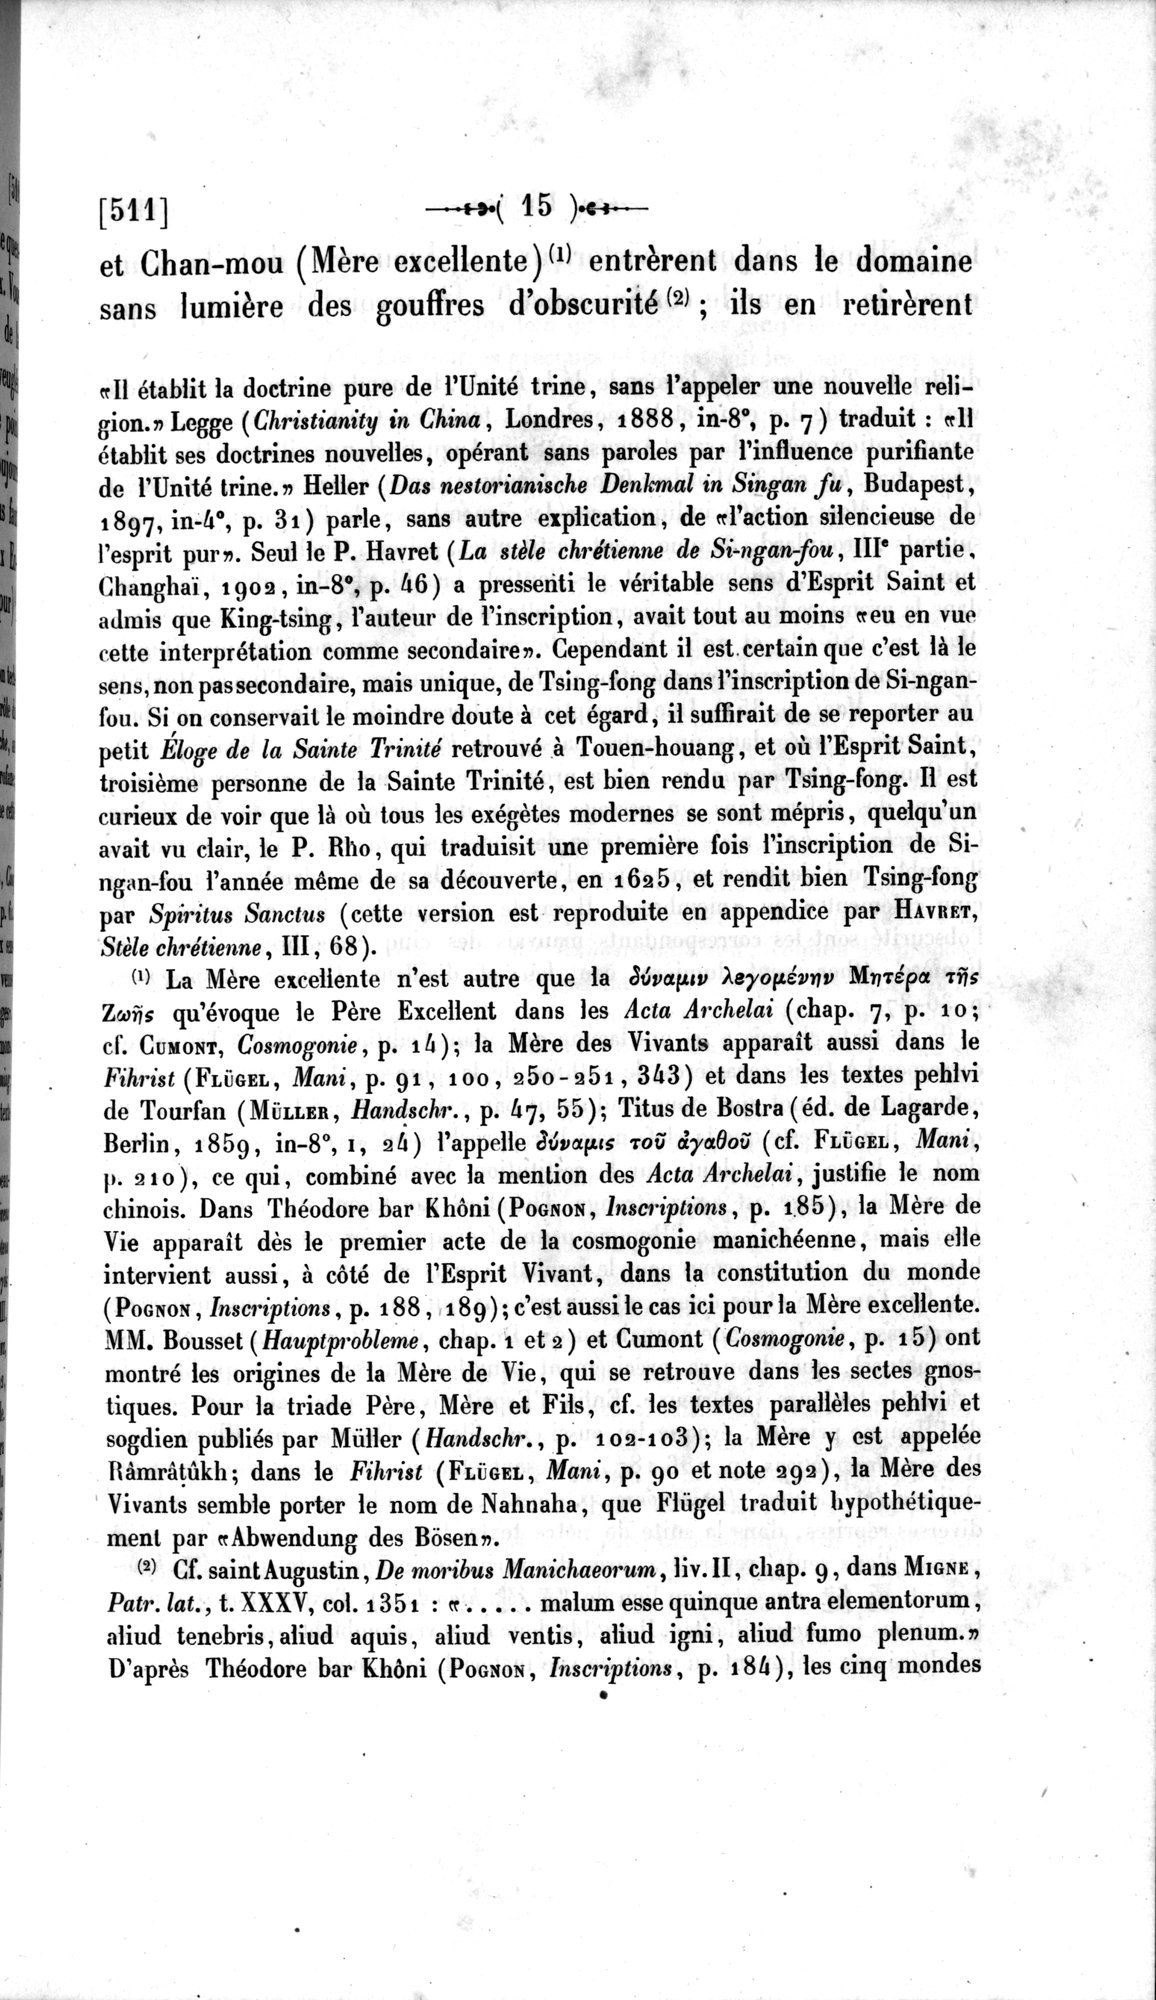 Un traité manichéen retrouvé en Chine : vol.1 / Page 25 (Grayscale High Resolution Image)